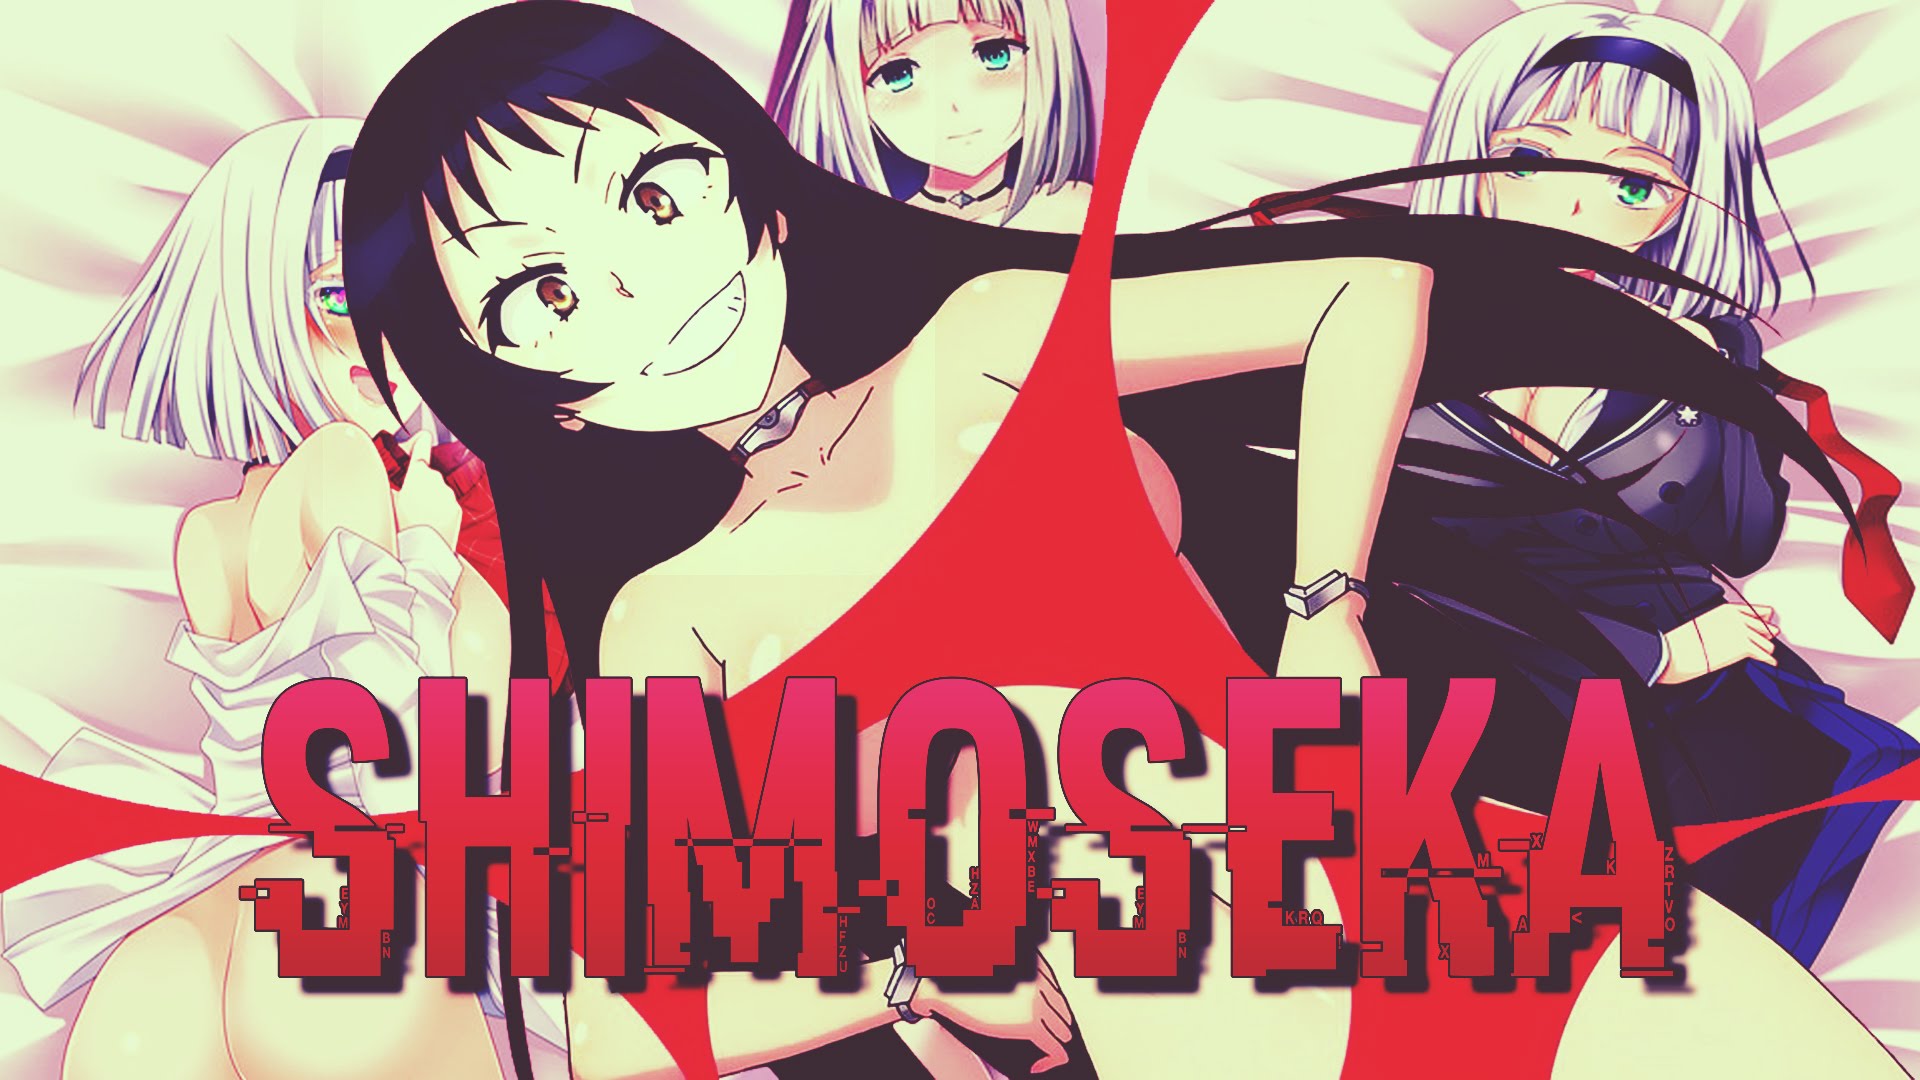 Shimoseka #4